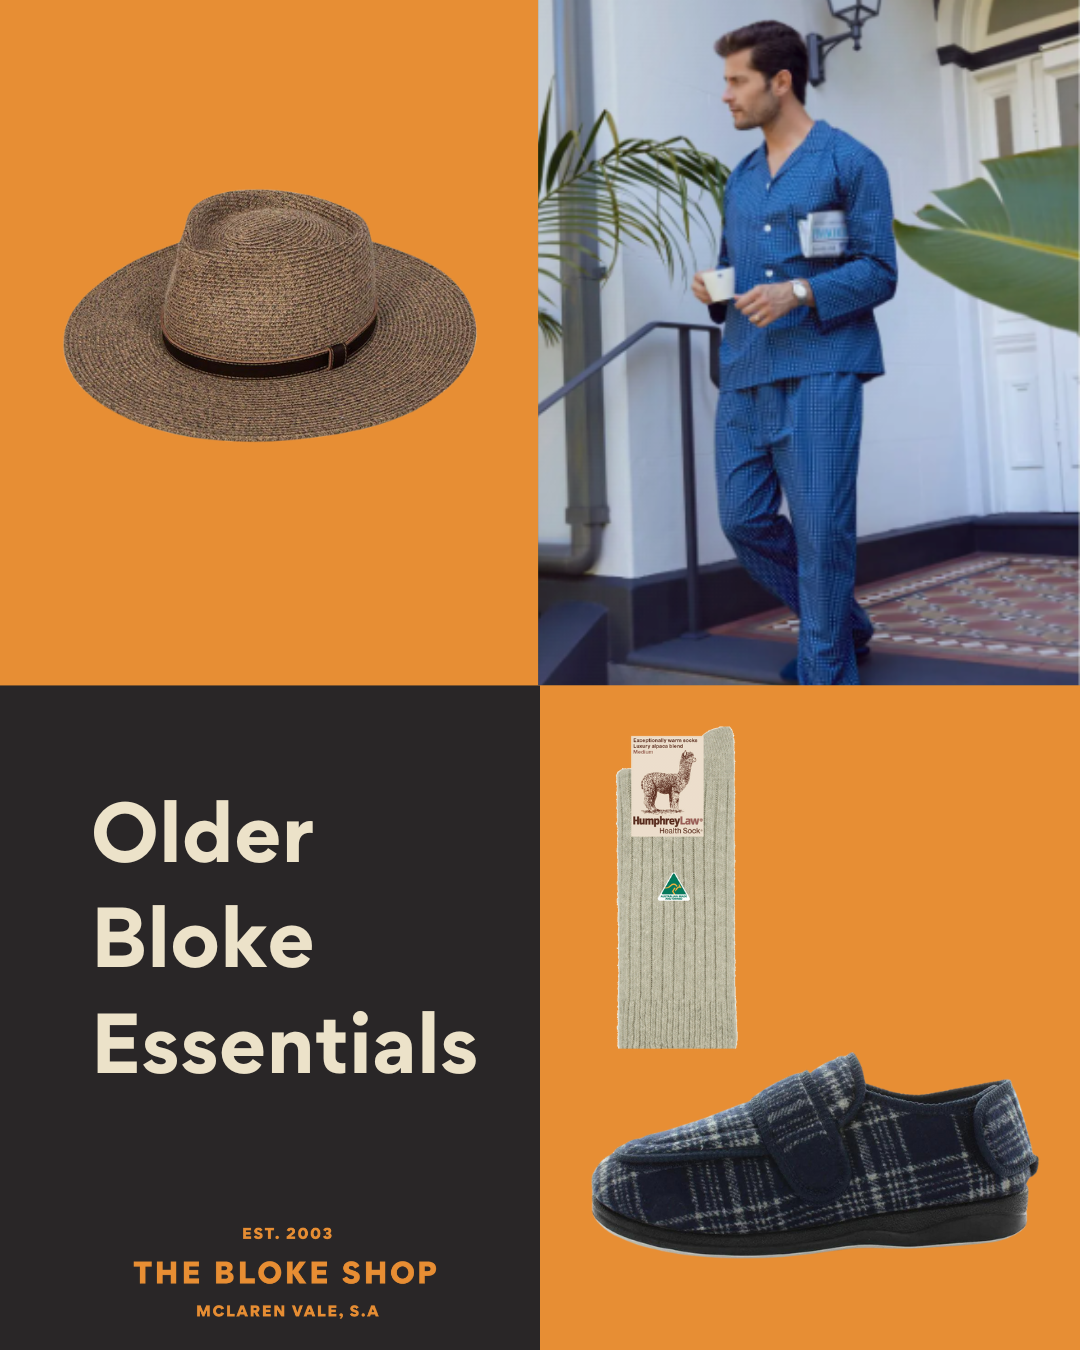 Clothing for Older Blokes, older men at The Bloke Shop.